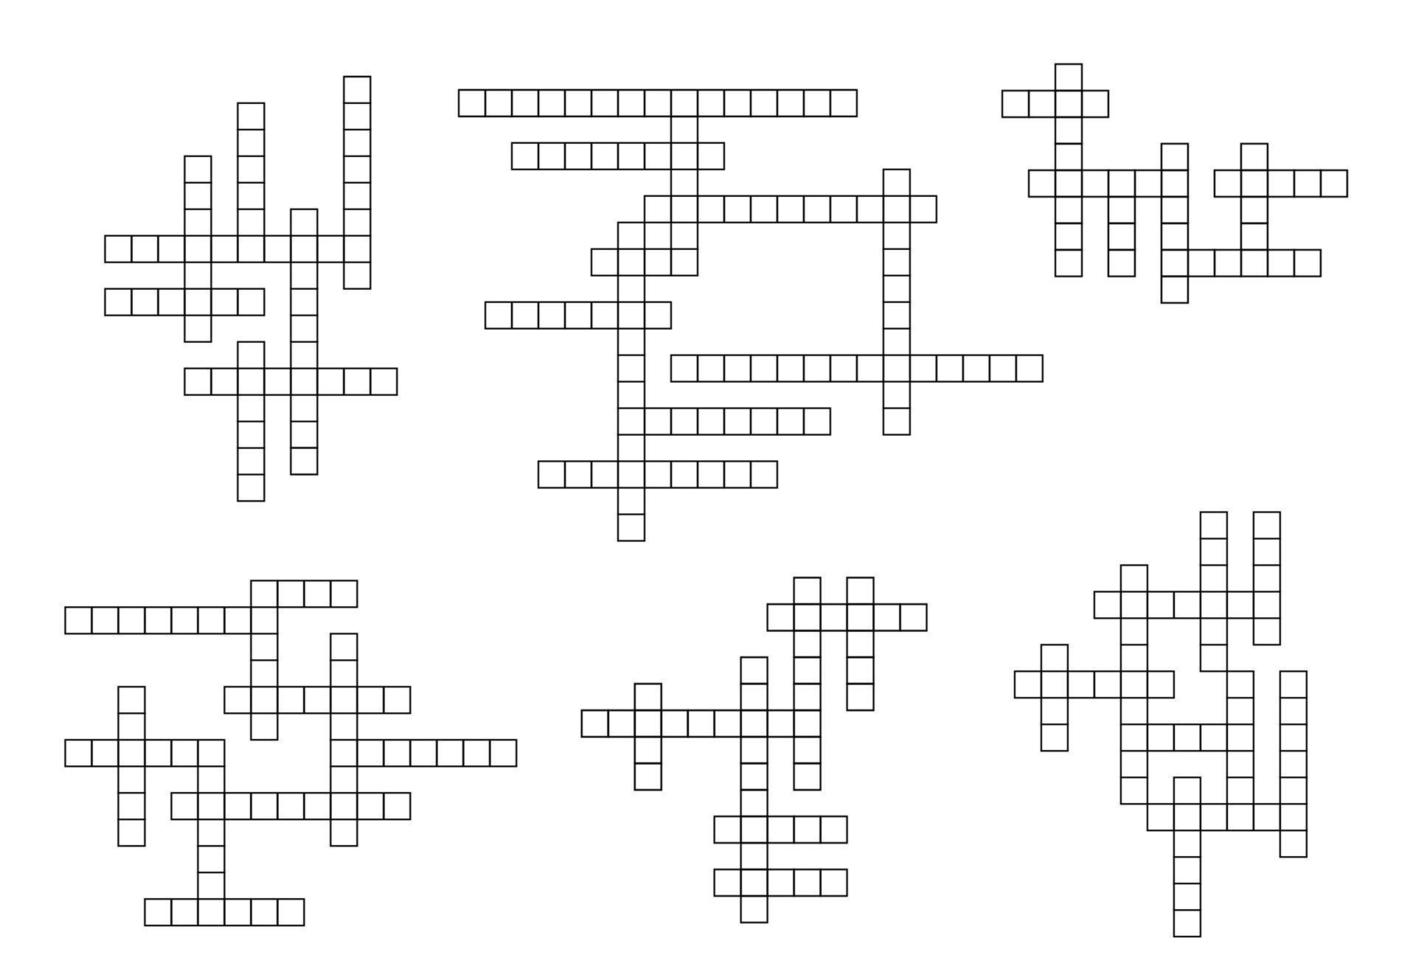 grille de jeu de mots croisés, constructeur de puzzle vectoriel